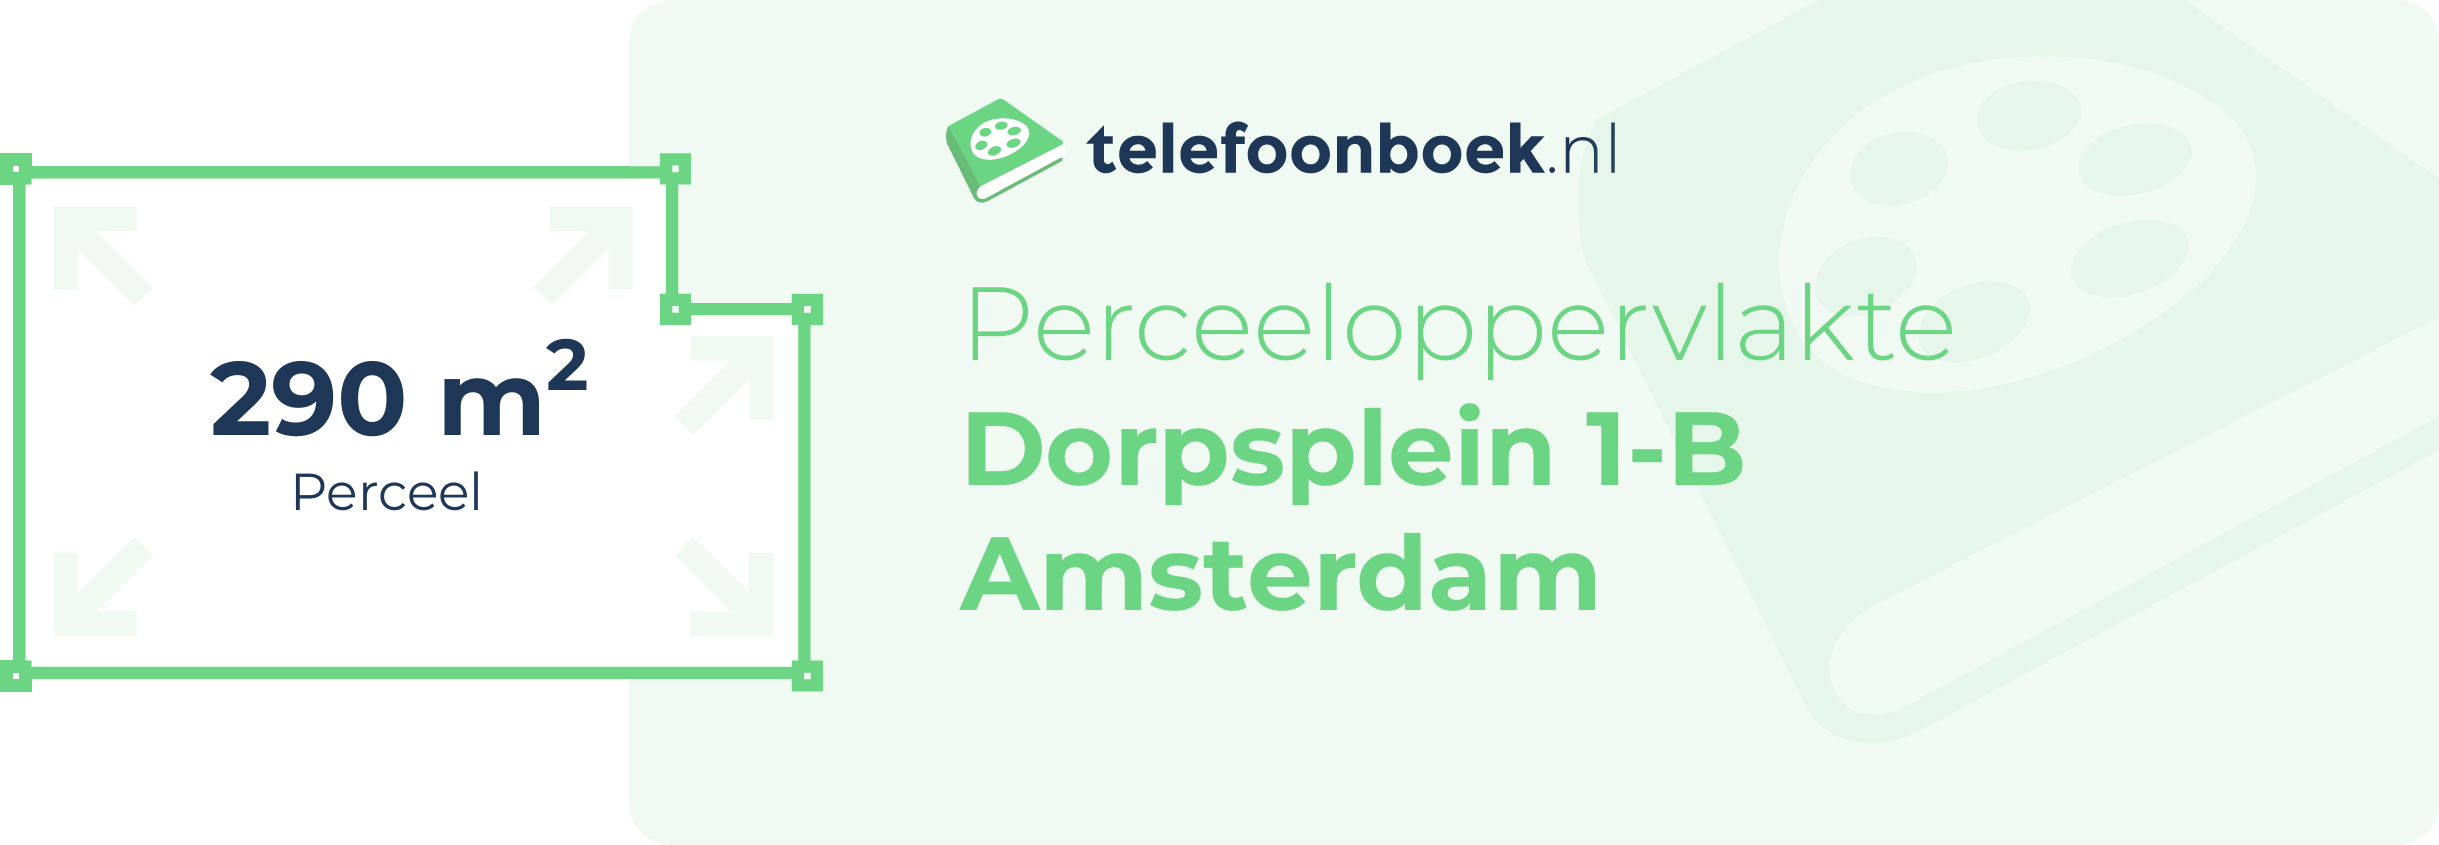 Perceeloppervlakte Dorpsplein 1-B Amsterdam